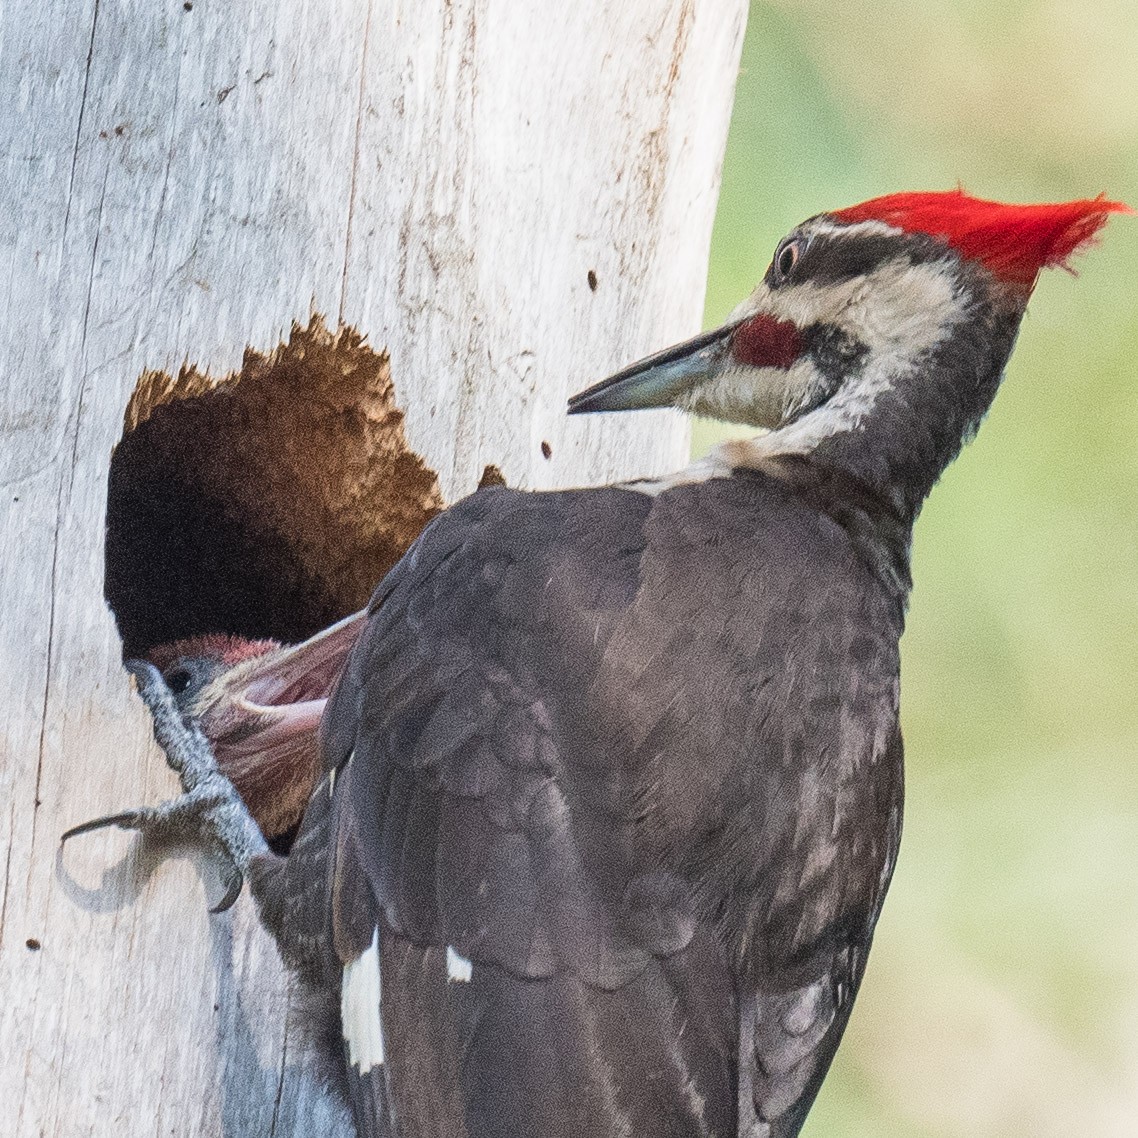 Pileated Woodpecker - Liling Warren